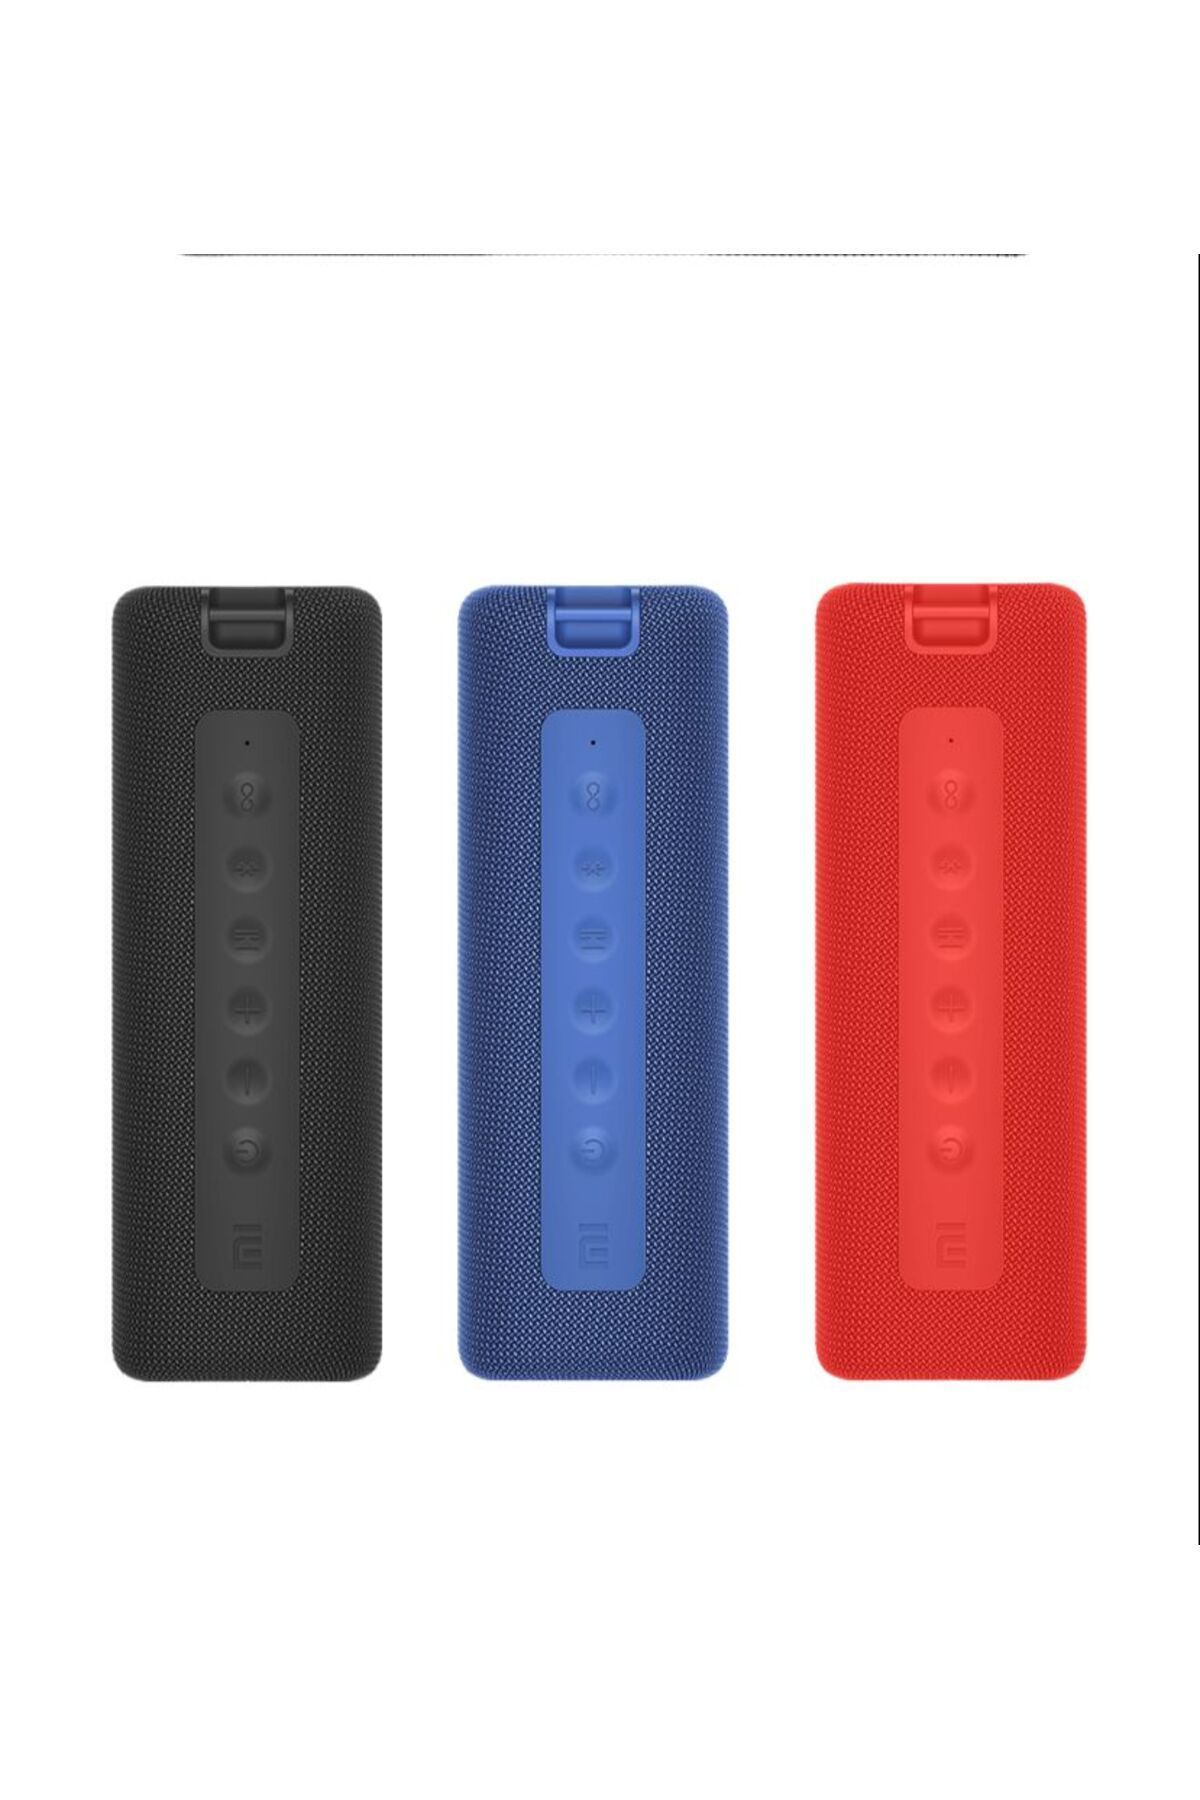 Xiaomi 2 Yıl Mi Portable MDZ-36-DB Kırmızı Bluetooth Hoparlör MI SPEAKER 5-10 Saat Resmi Distribütör Garan